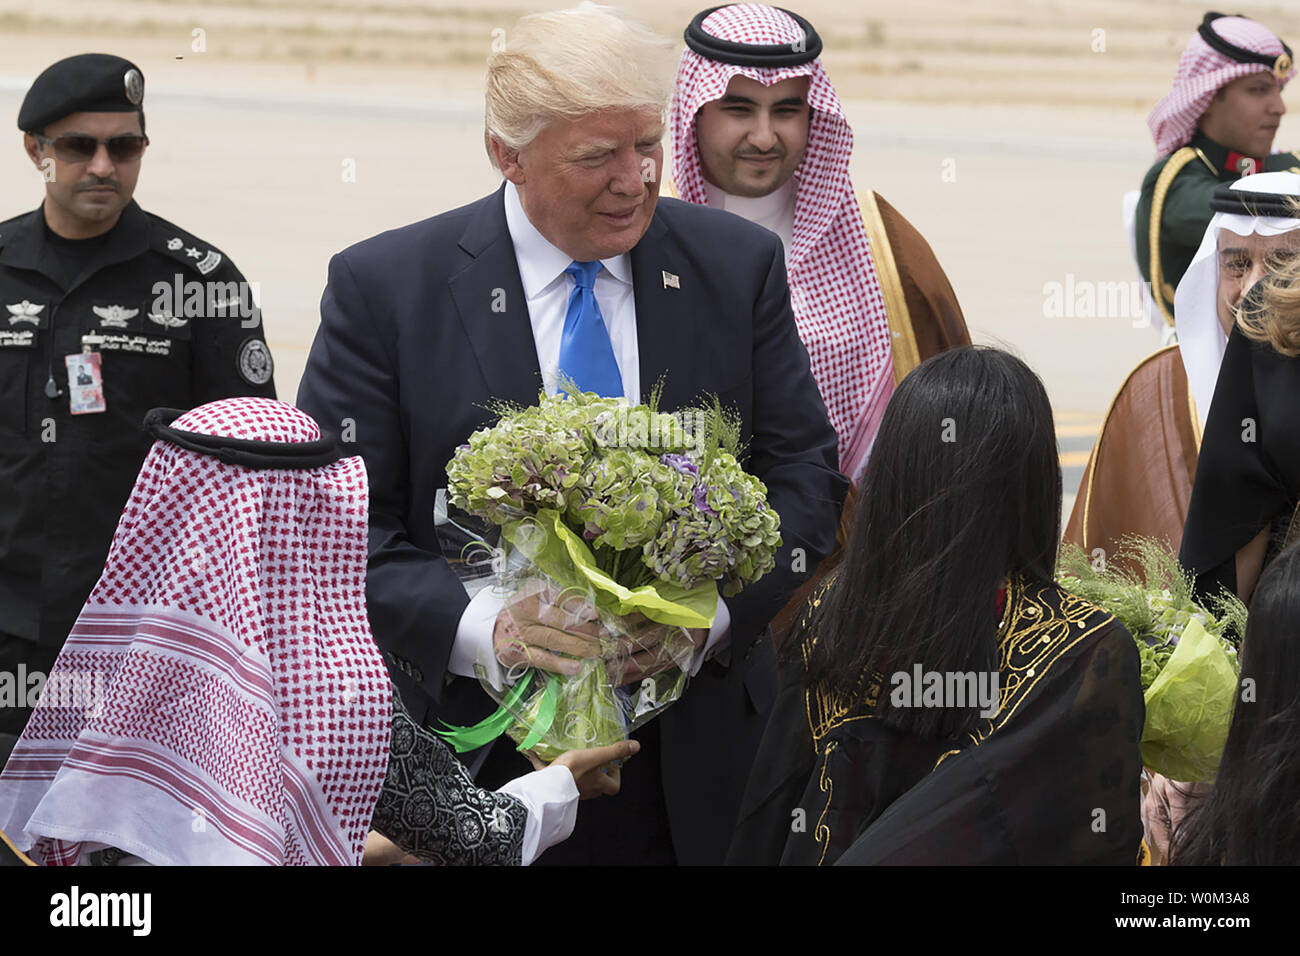 Präsident Donald Trump und First Lady Melania Trump sind mit Blumensträußen begrüßt, 20. Mai 2017, über Ihre Anreise zum Flughafen King Khalid in Riad, Saudi-Arabien. Weiße Haus Foto von Andrea Hanks/UPI Stockfoto